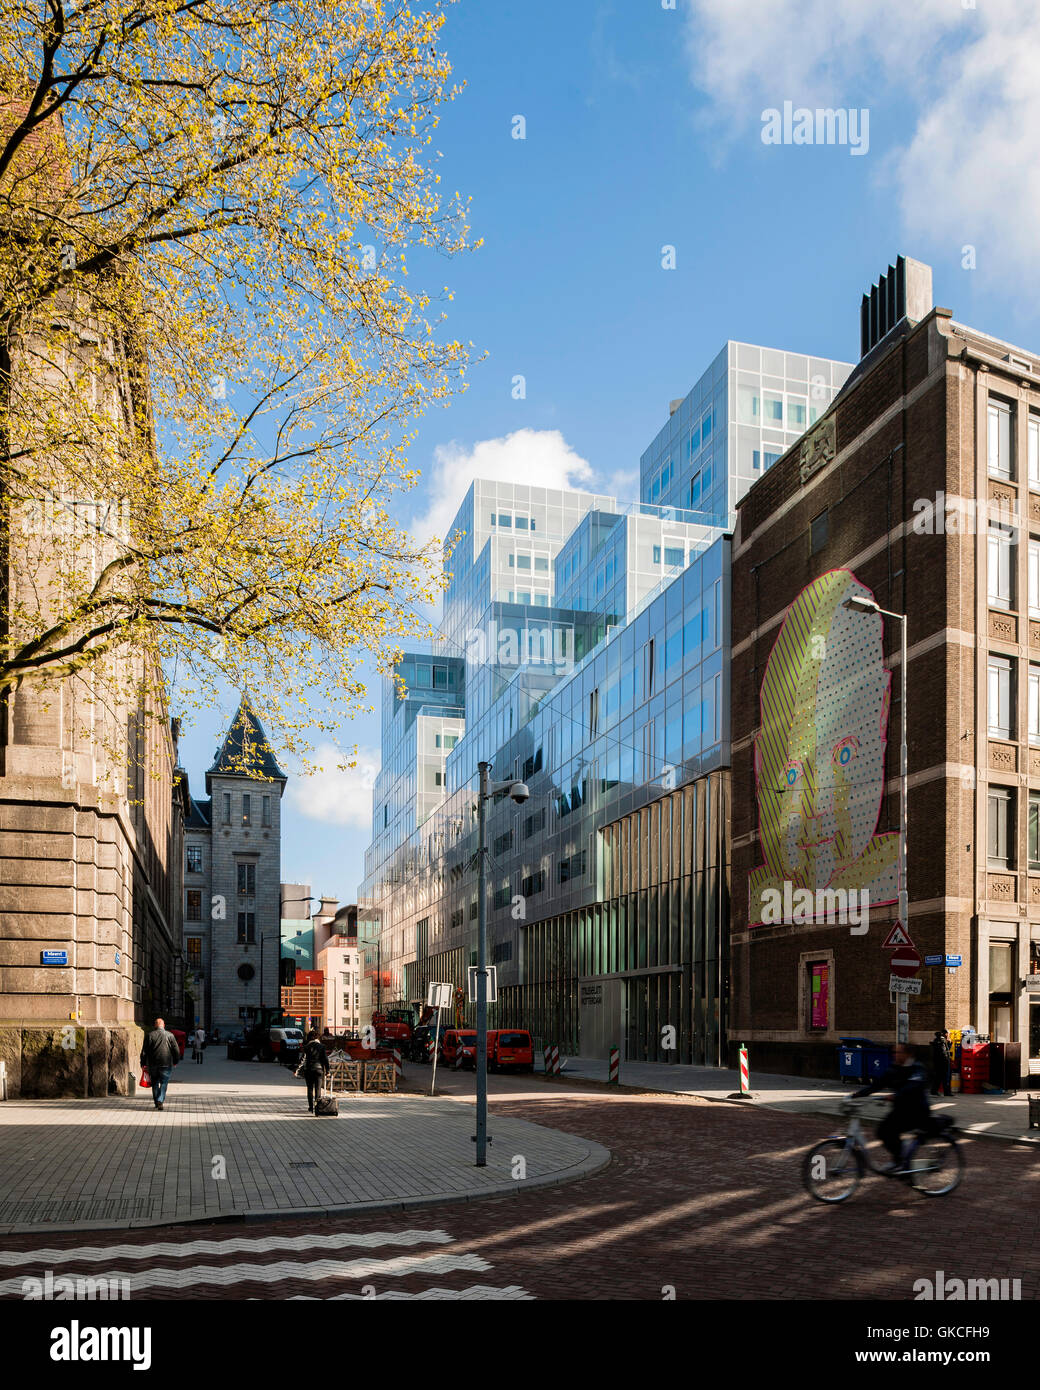 Por la mañana vista exterior de edificios antiguos y nuevos. Timmerhuis, Rotterdam, Países Bajos. Arquitecto: OMA Rem Koolhaas, 2015. Foto de stock